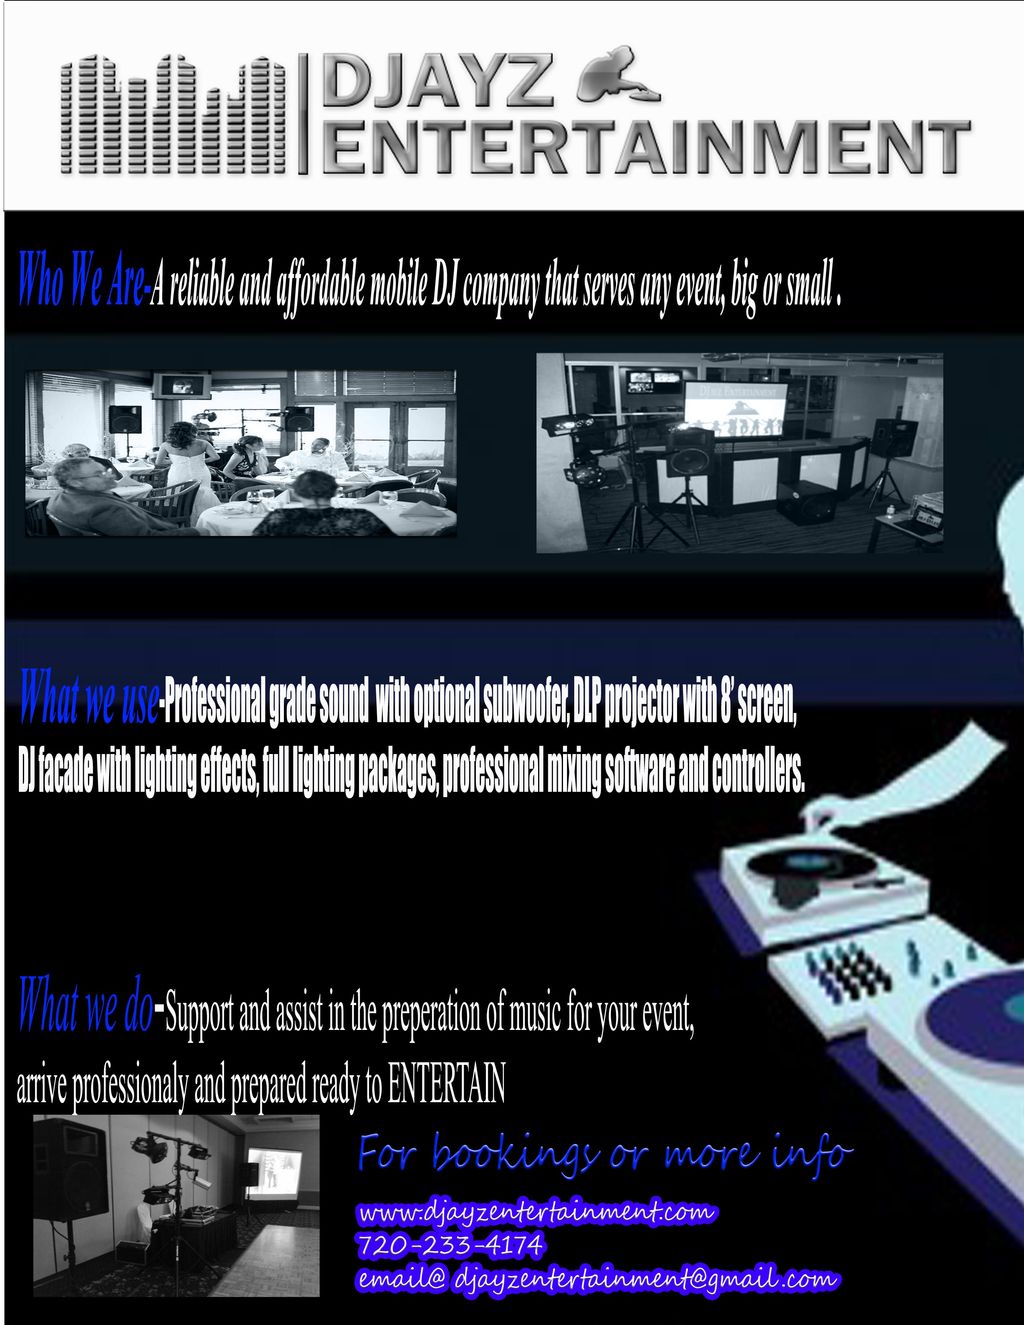 DJayz Entertainment